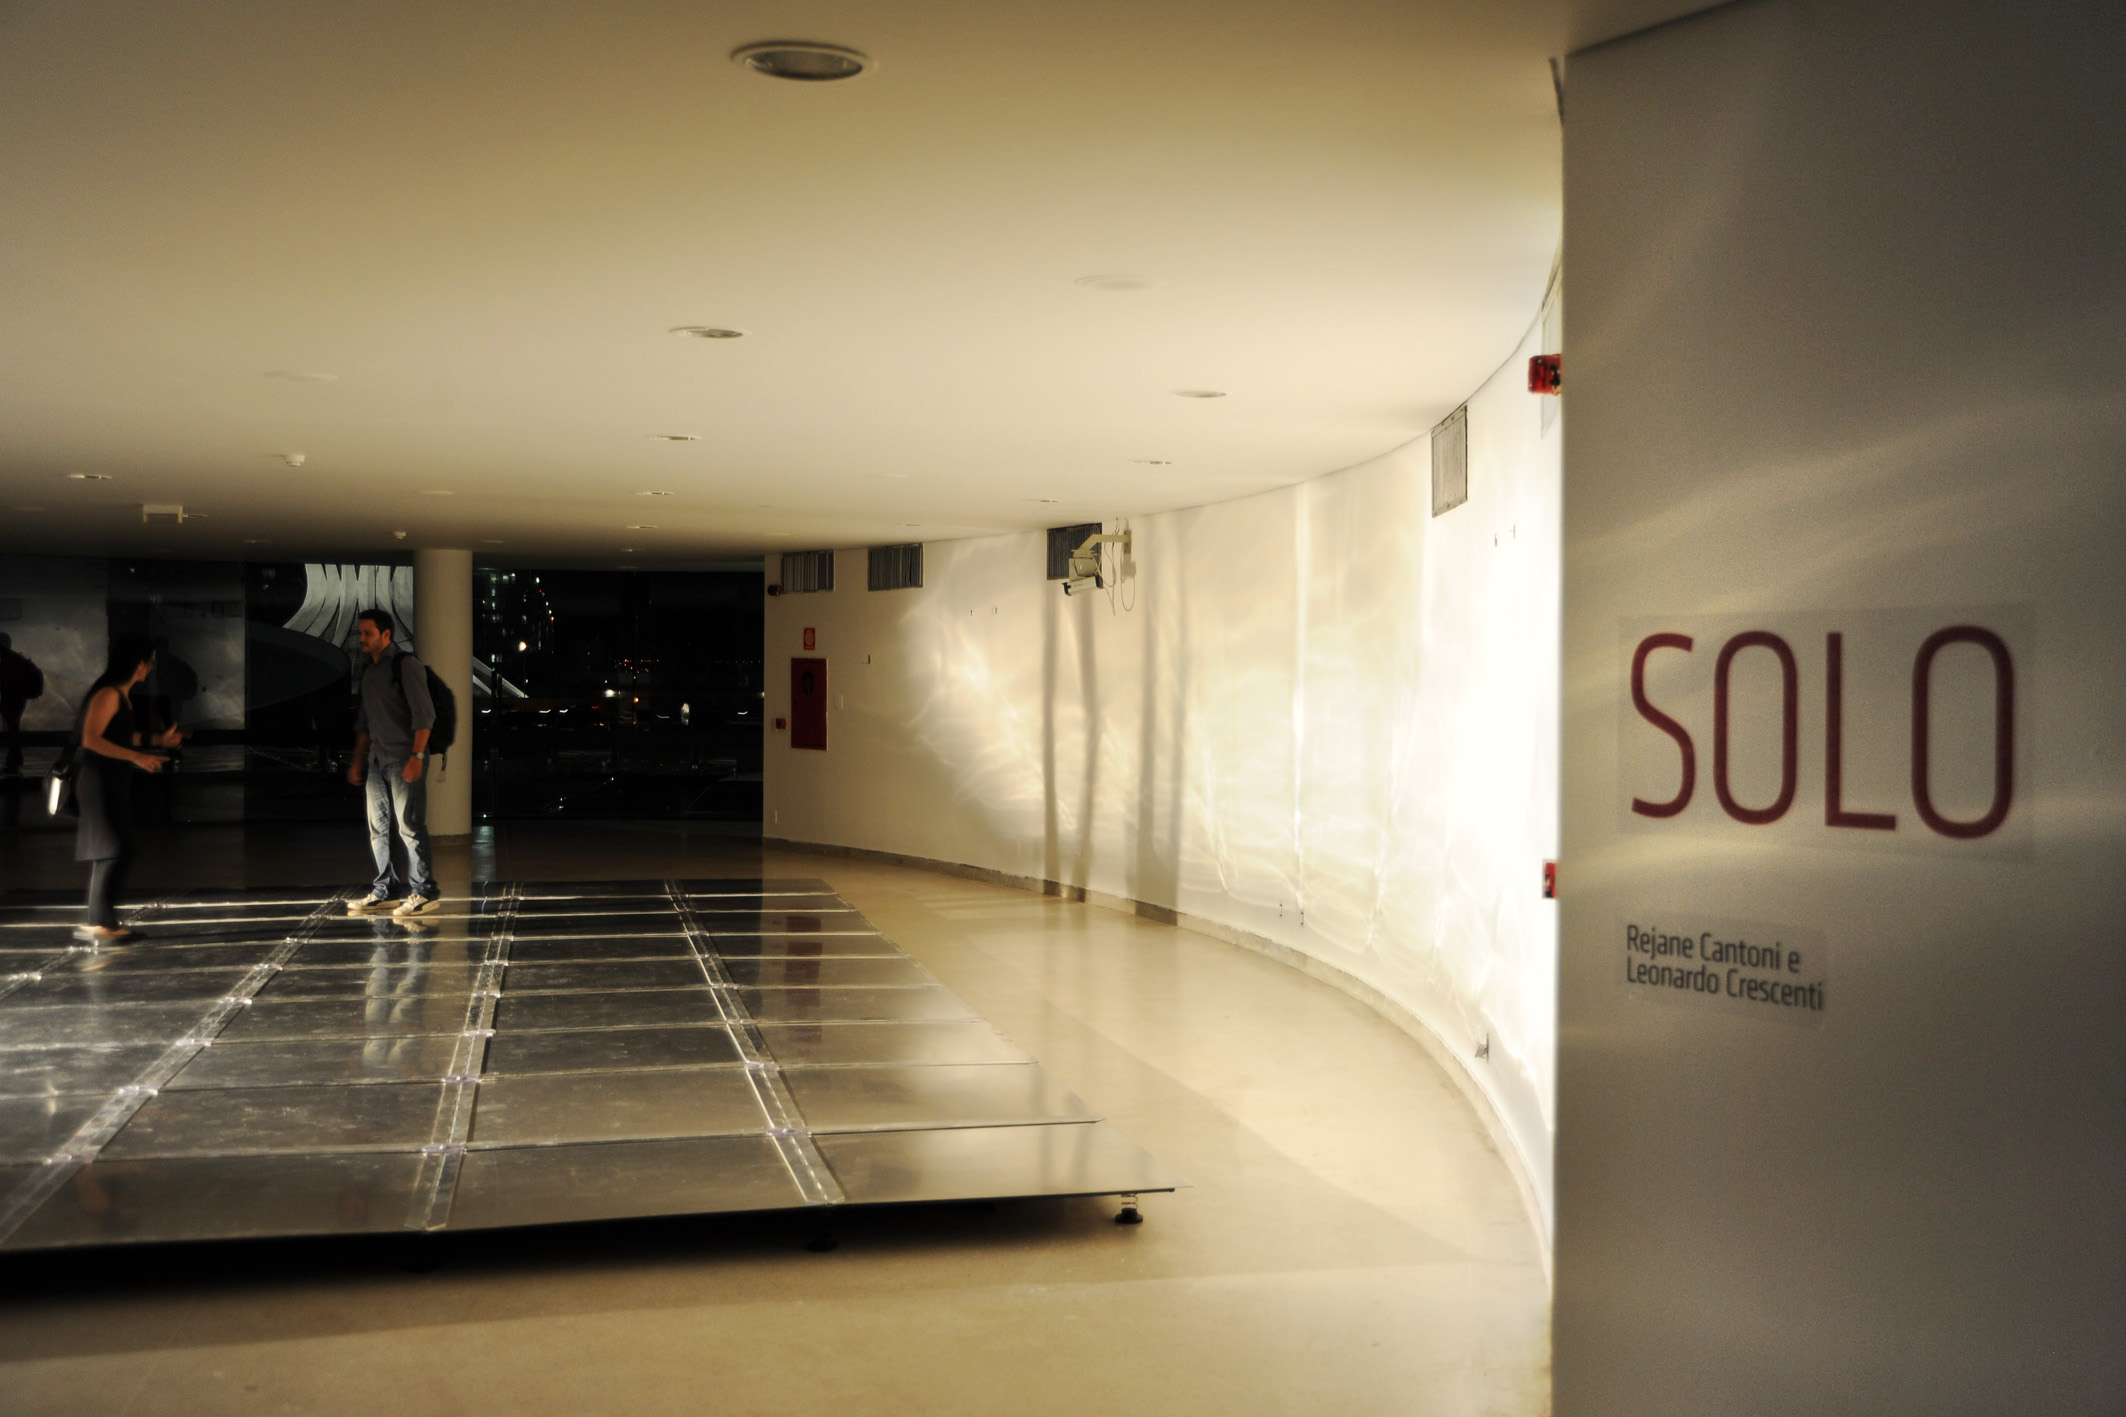    soil | solo    @ museu nac. da república 2011   + expo  